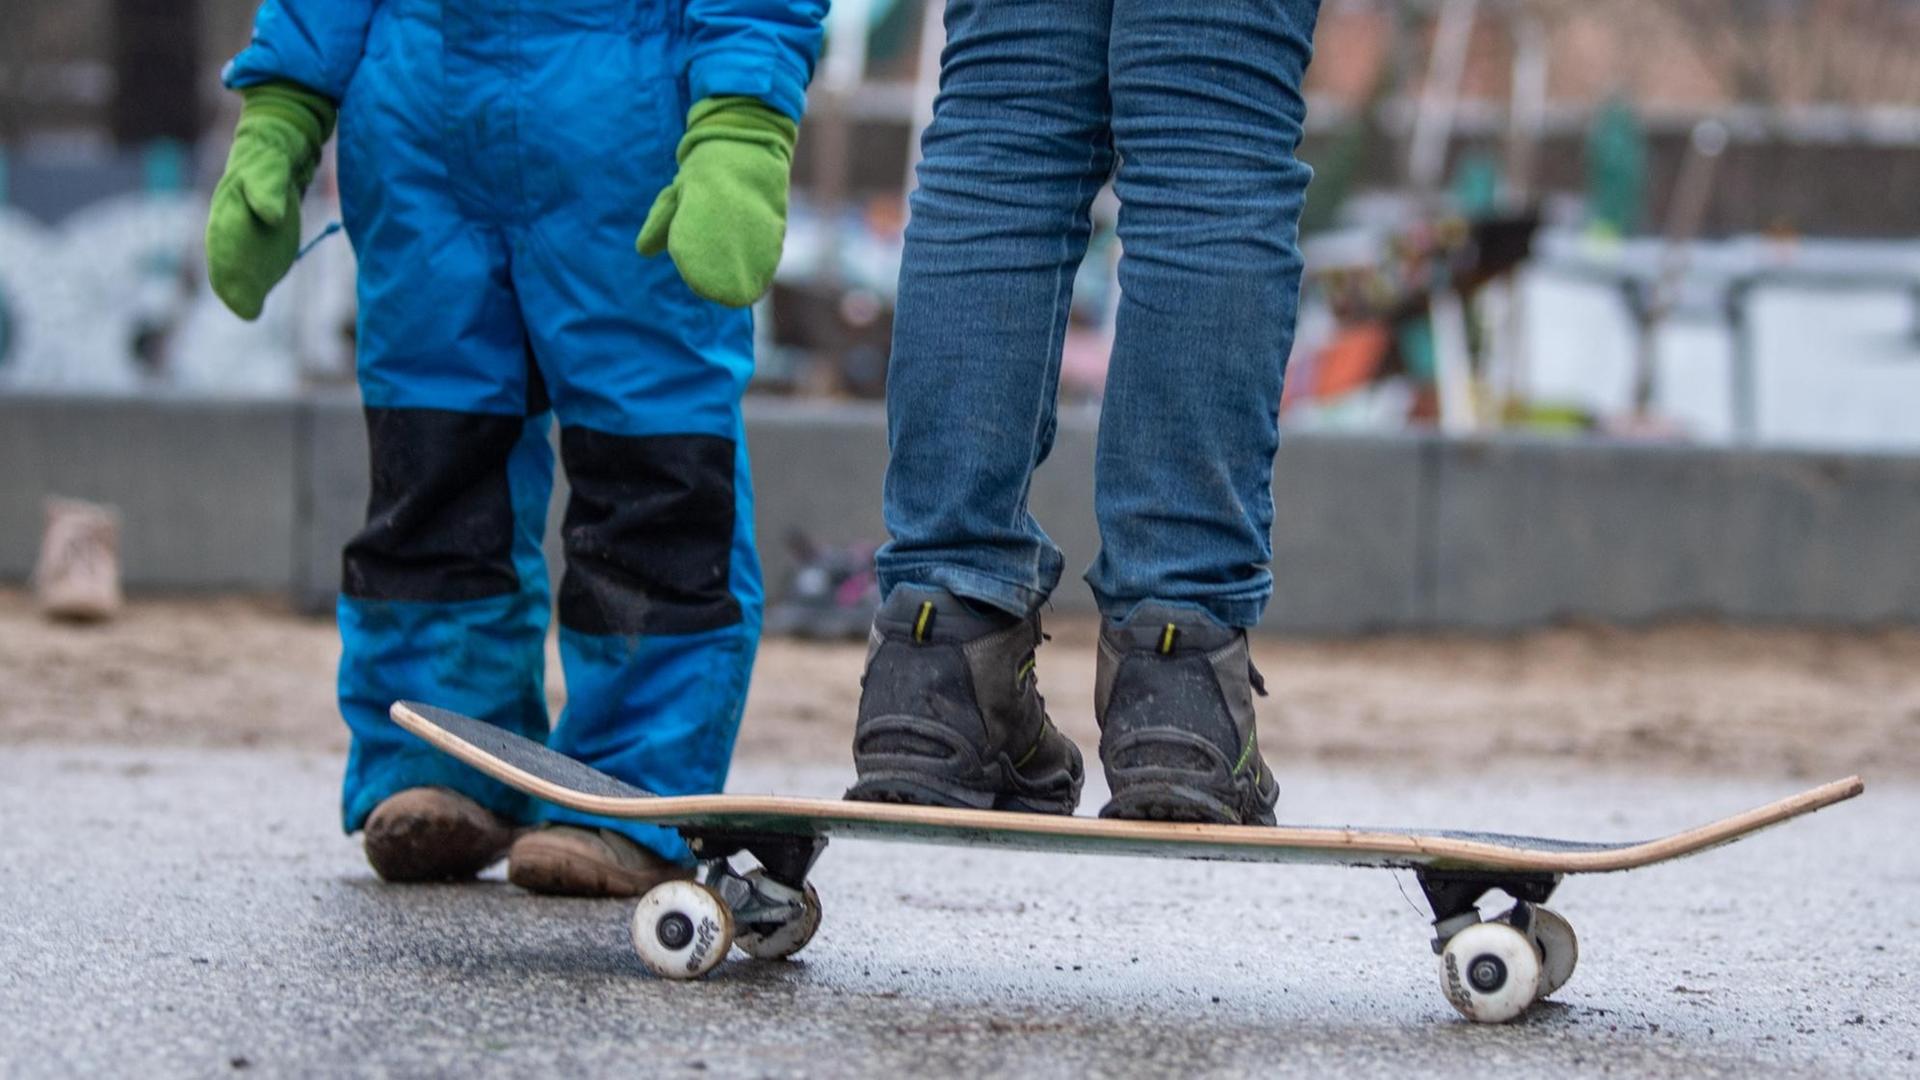 Zwei Kinder stehen bei einem Spielplatz in Berlin. Ein Kind balanciert auf einem Skateboard.